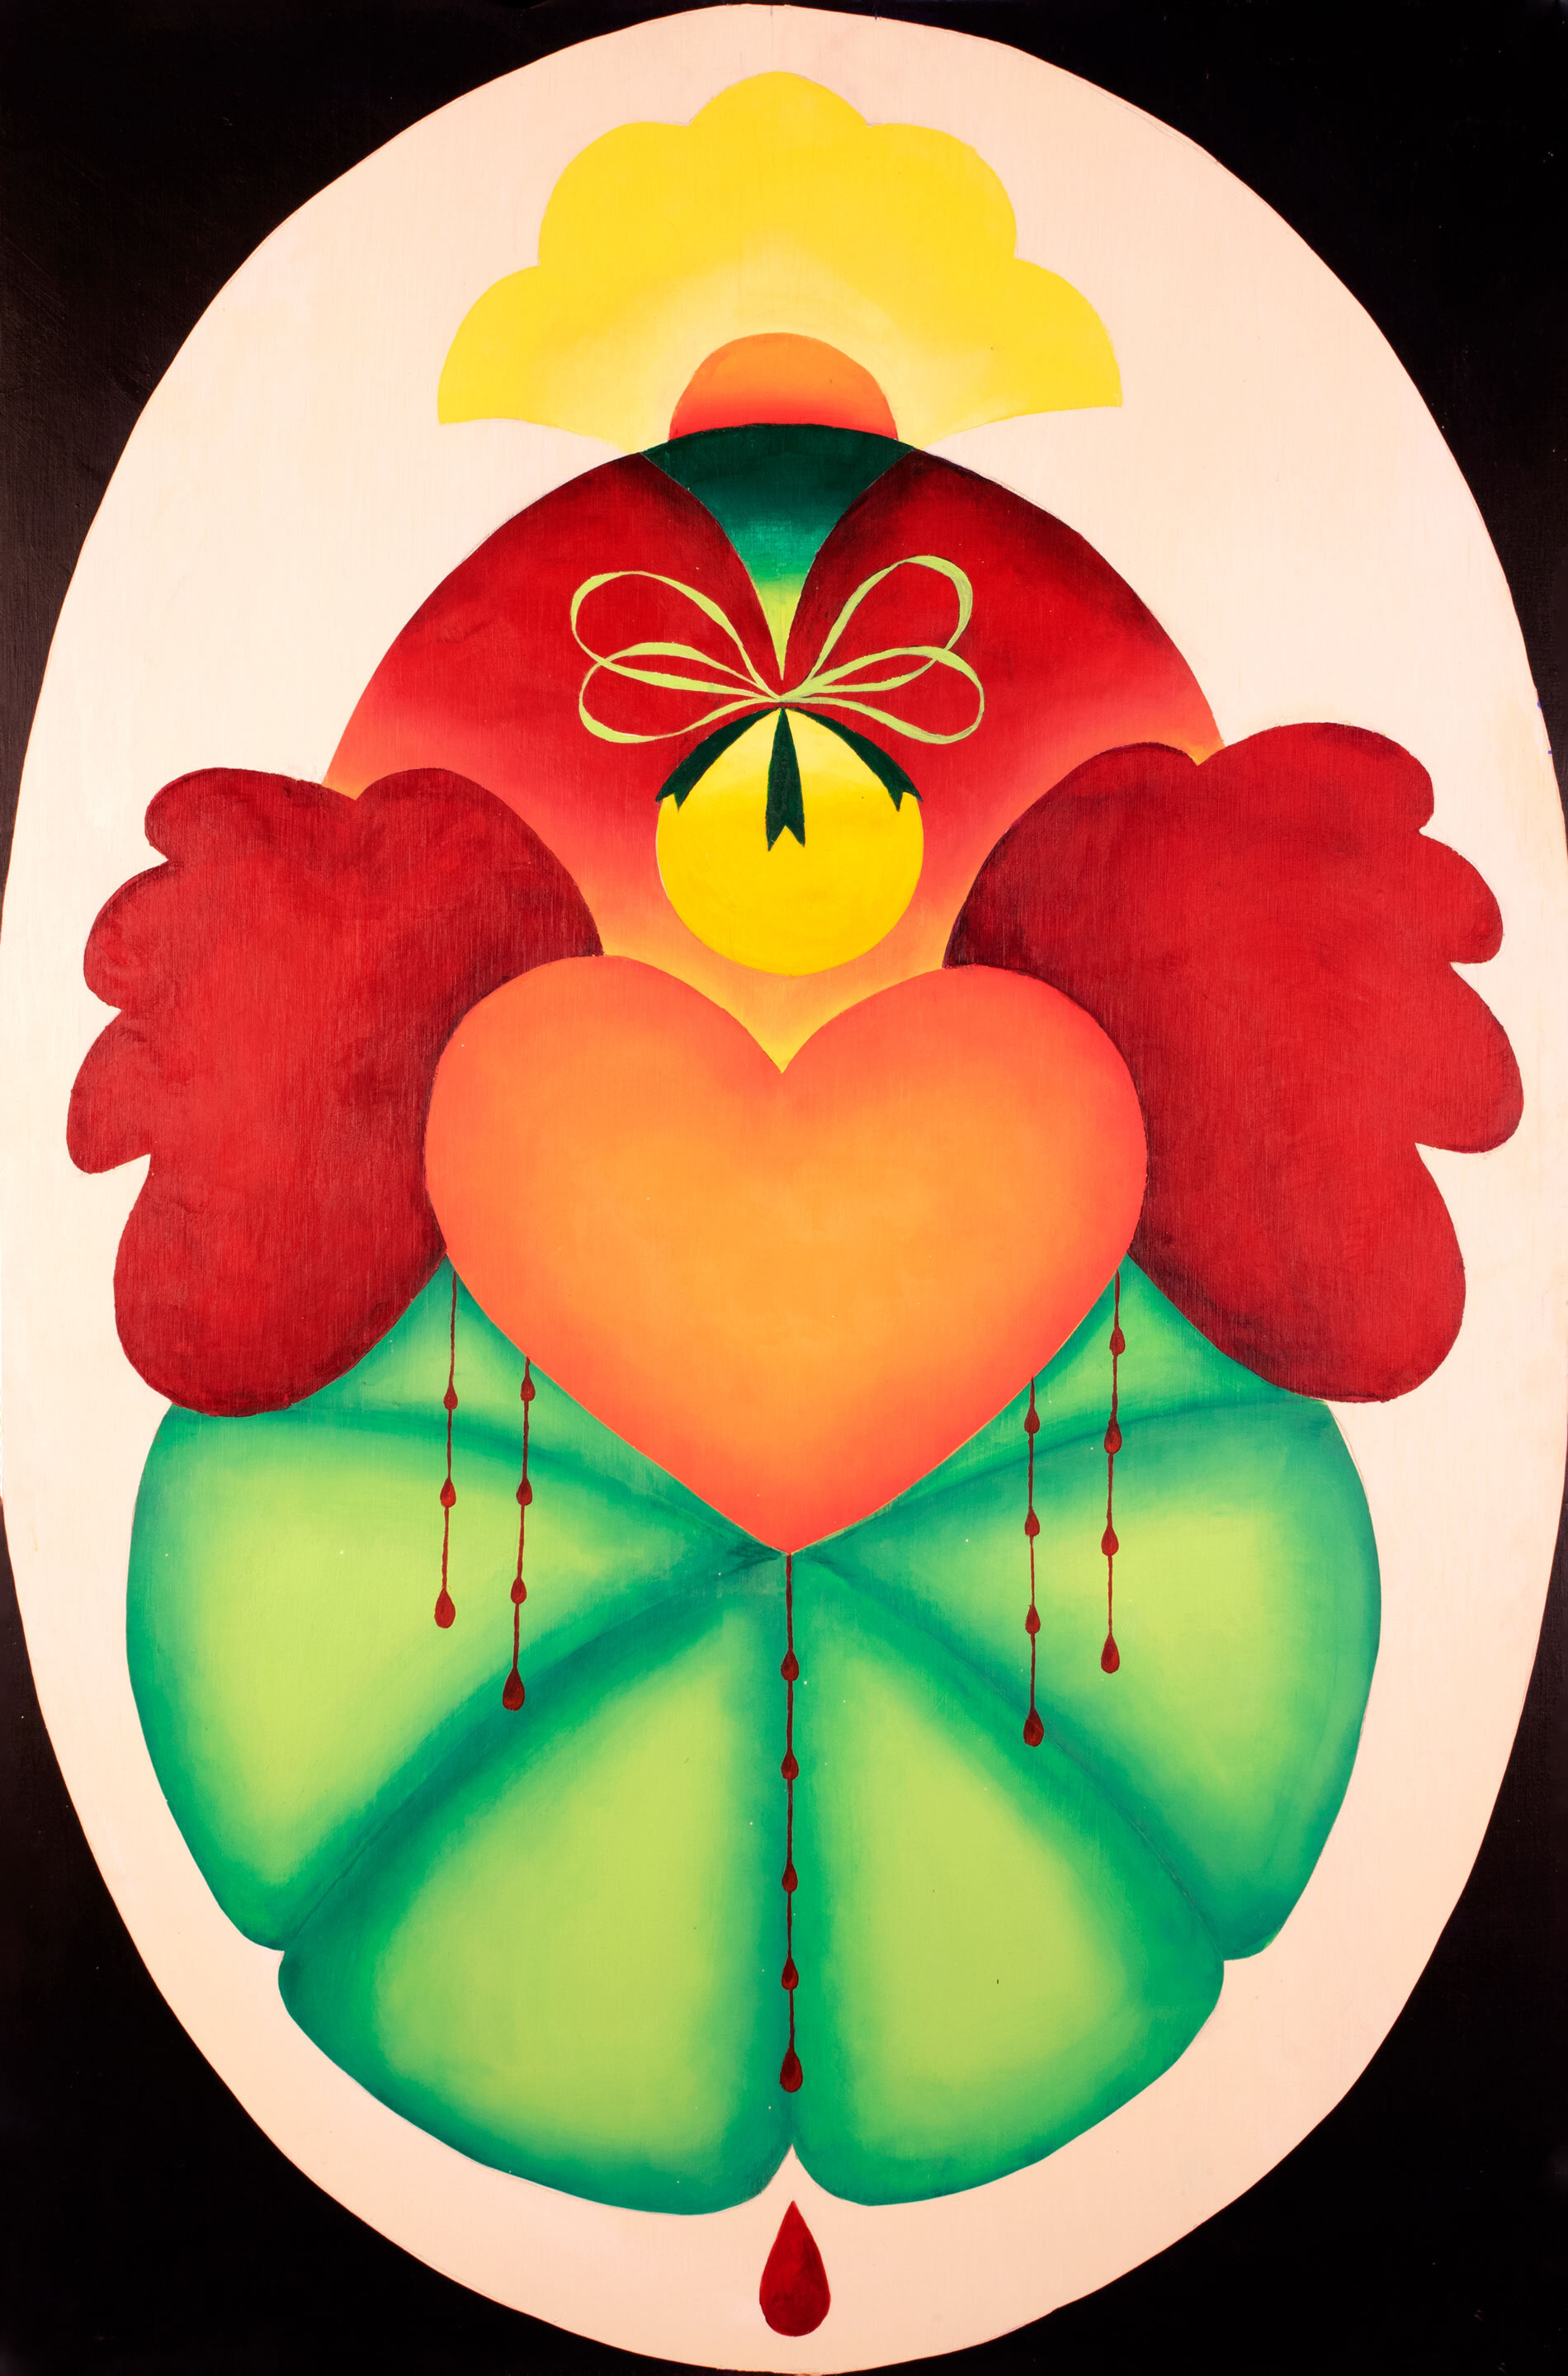 Amber Heart, acrylic on wood panel, 24x36"